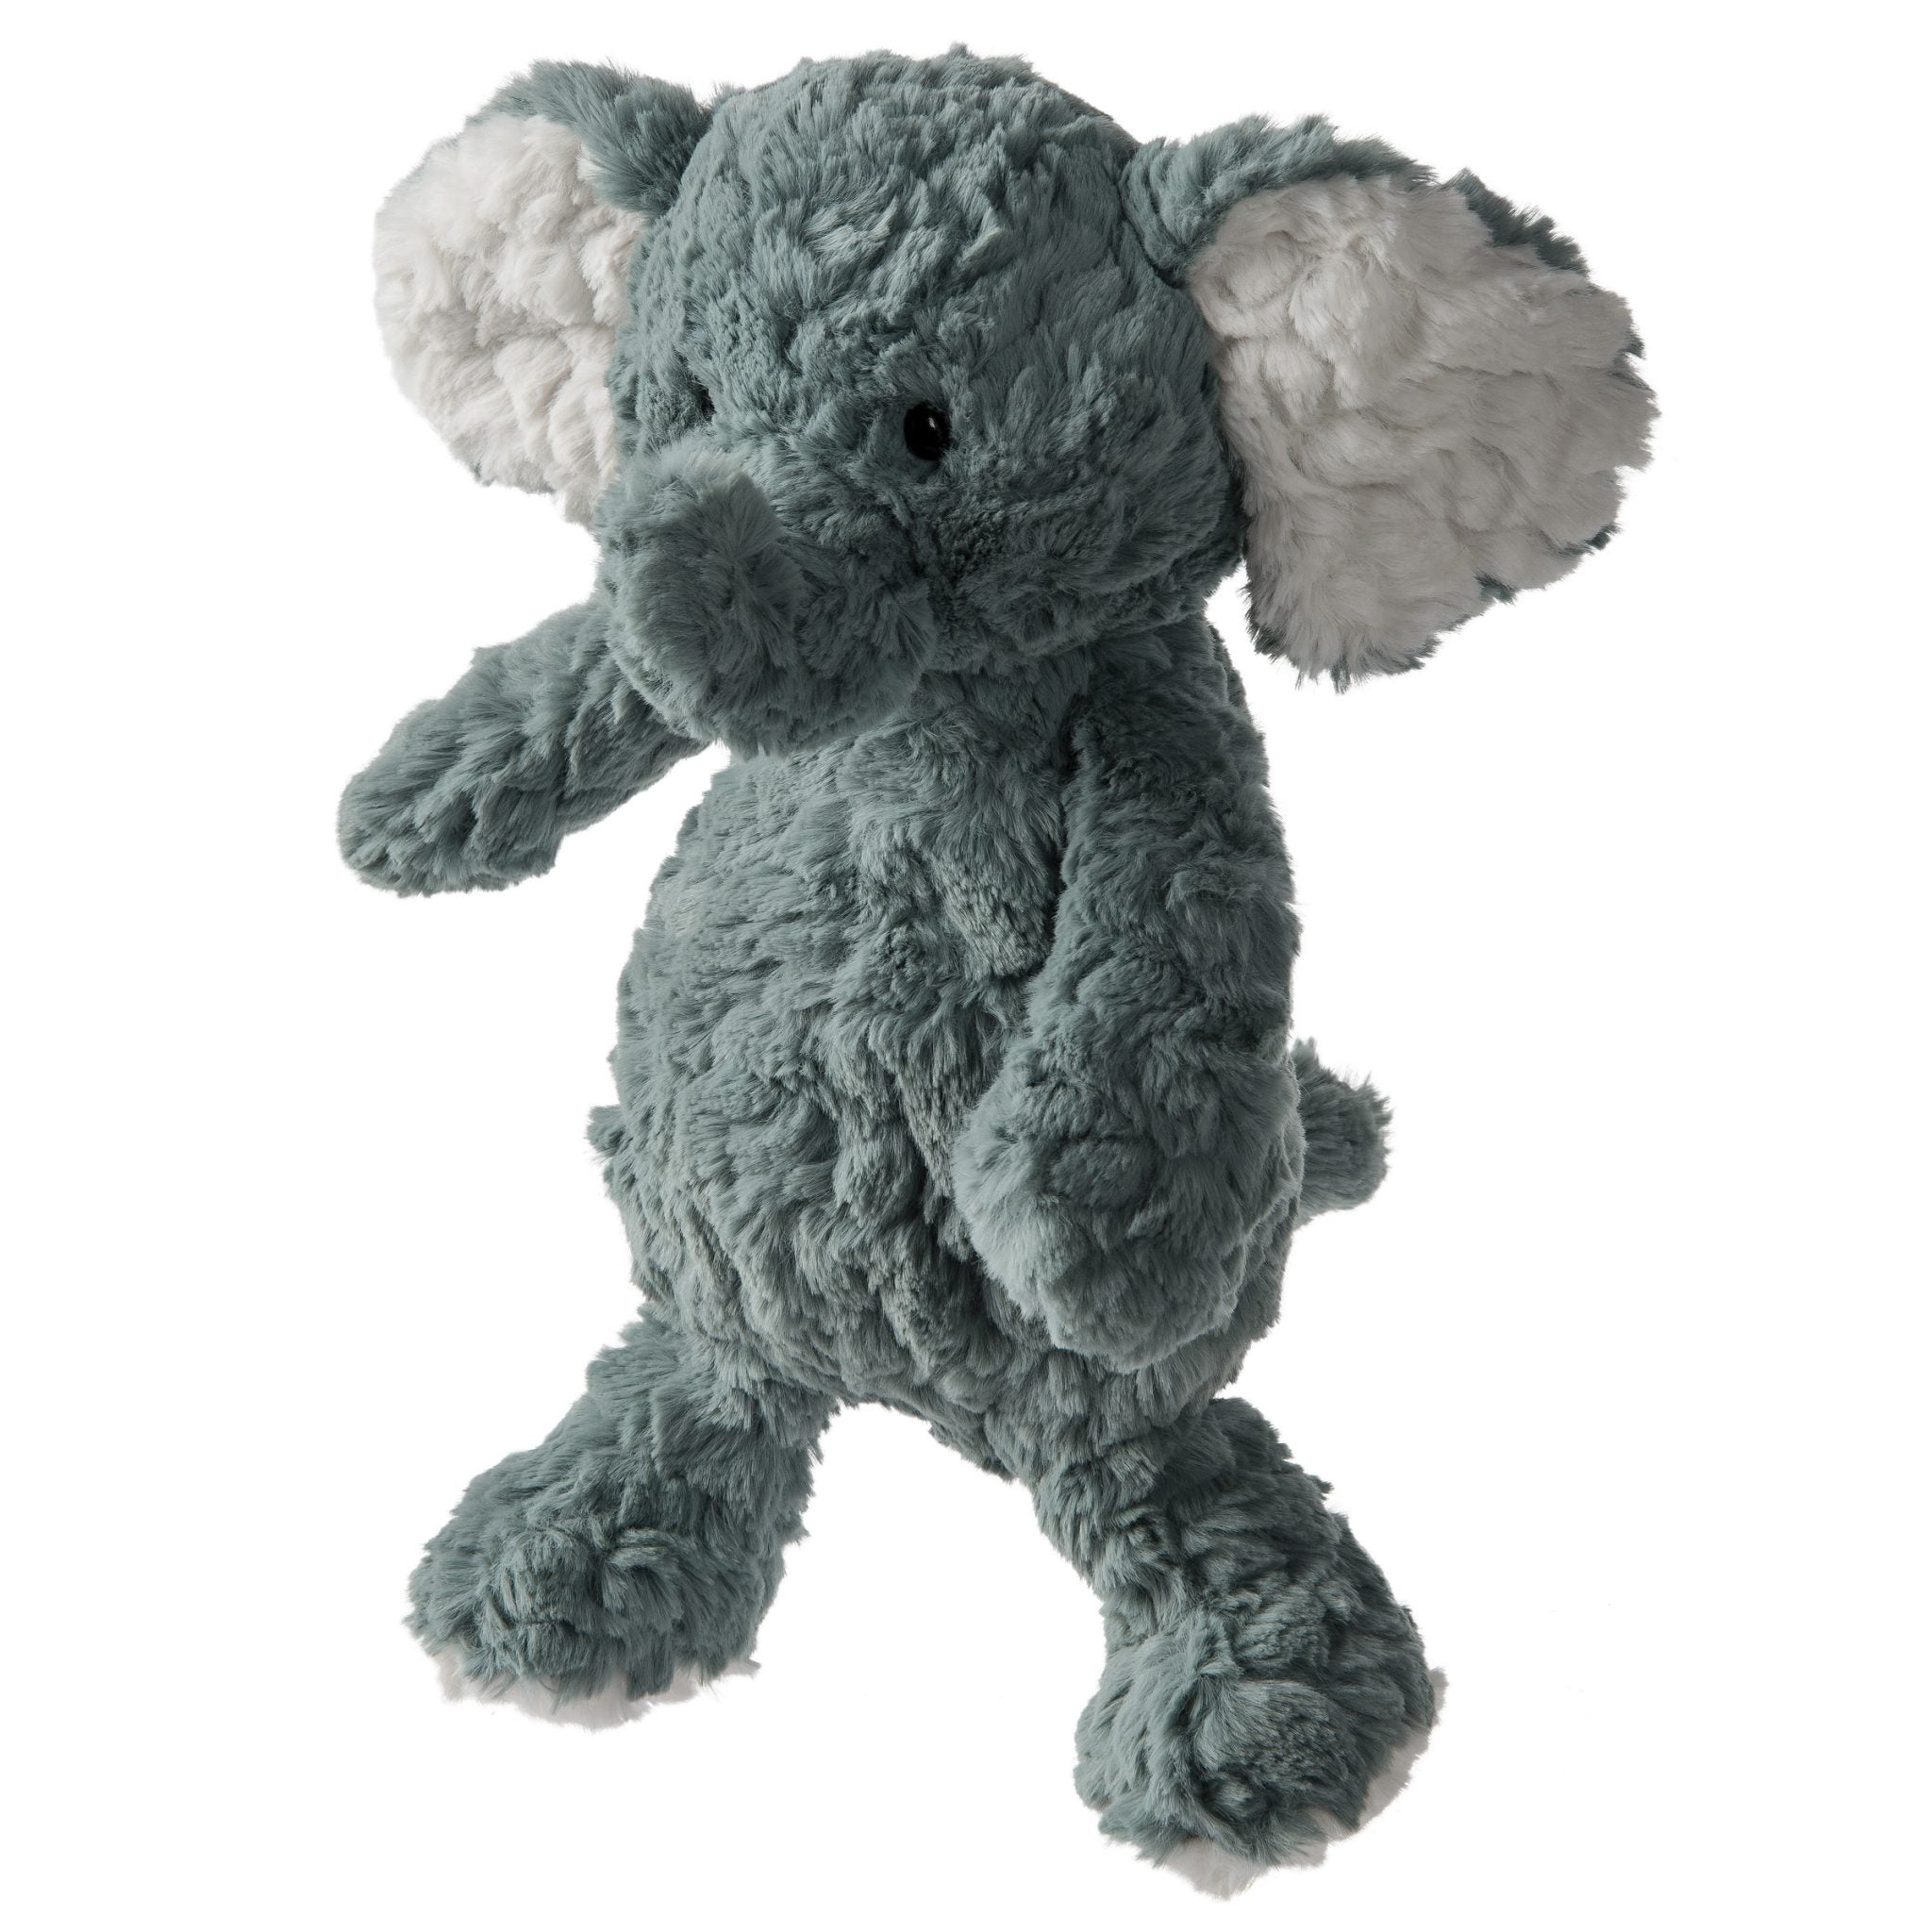 &#39;Slate&#39; blue elephant soft toy with white ears